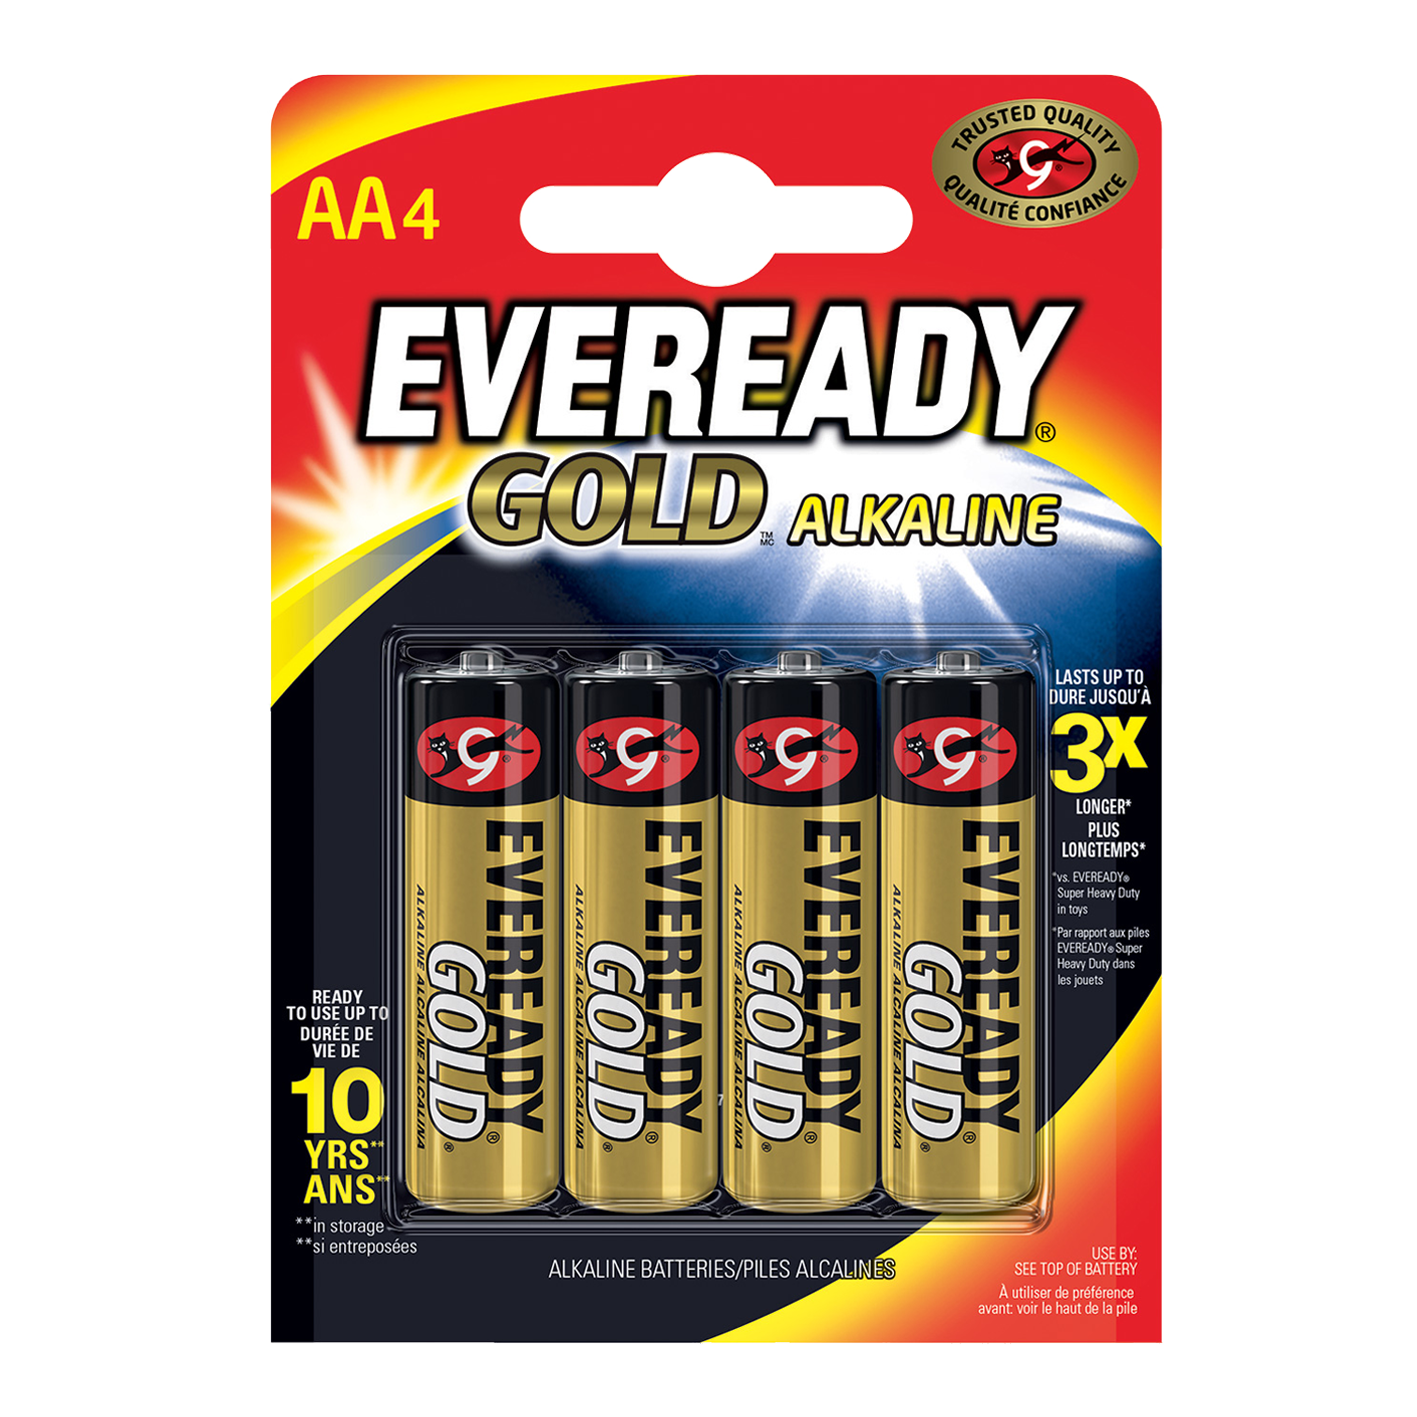 Eveready® AA oro alcalino, paquete de 4